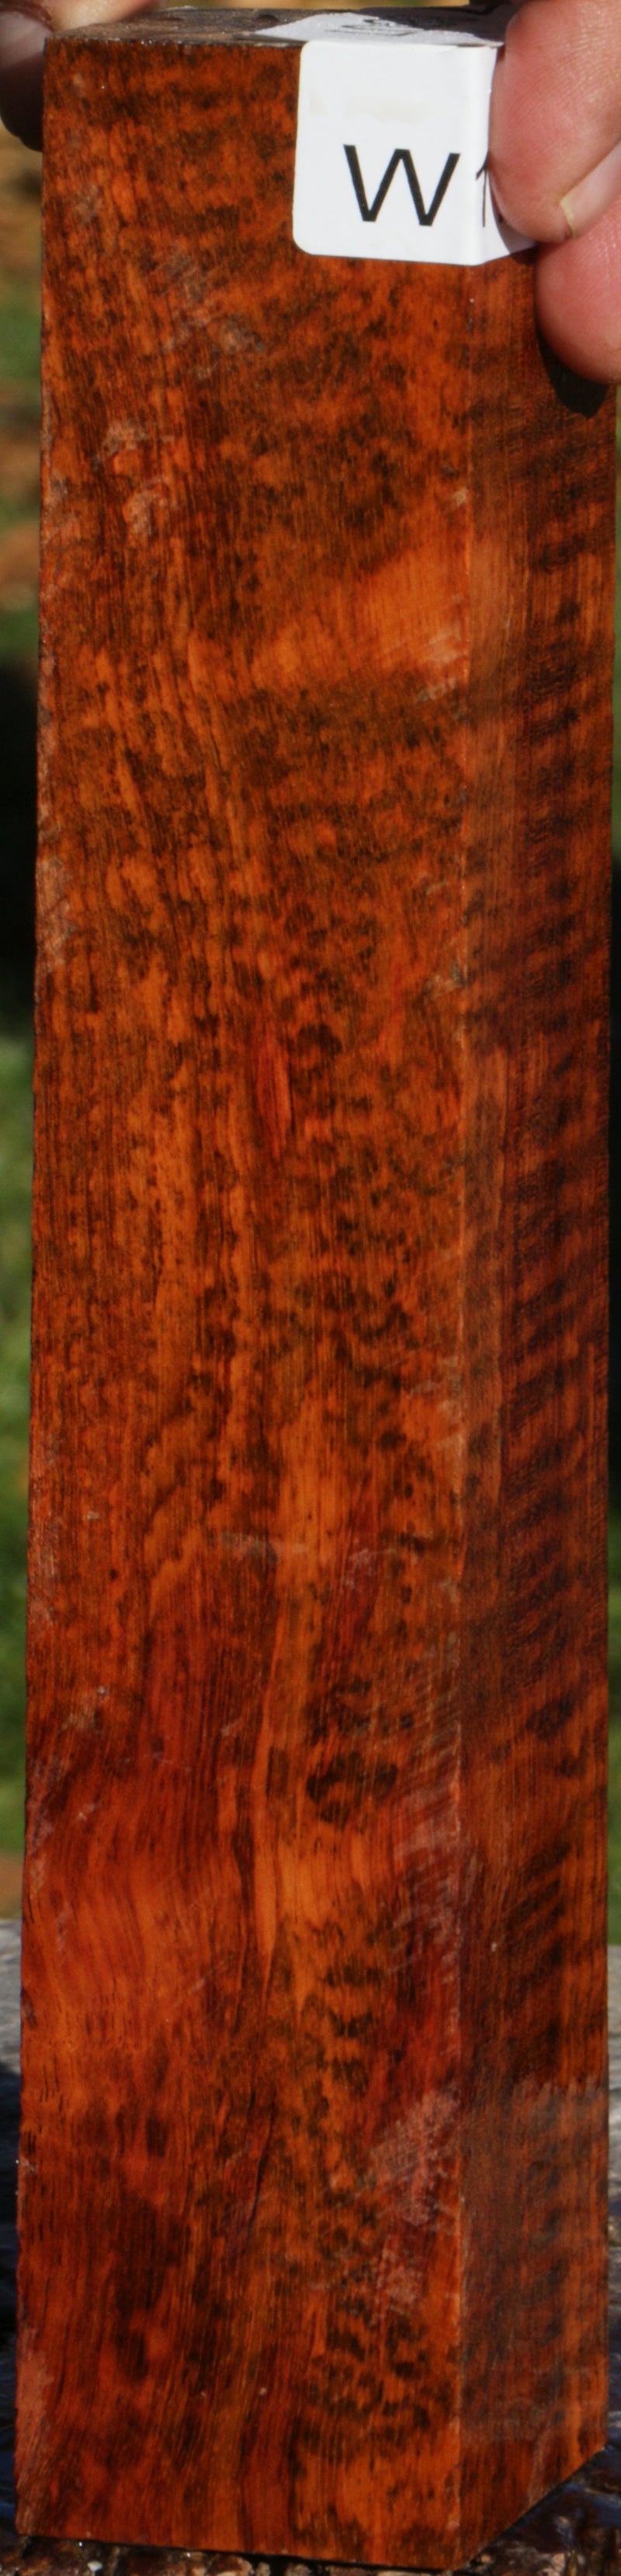 Snakewood Lumber